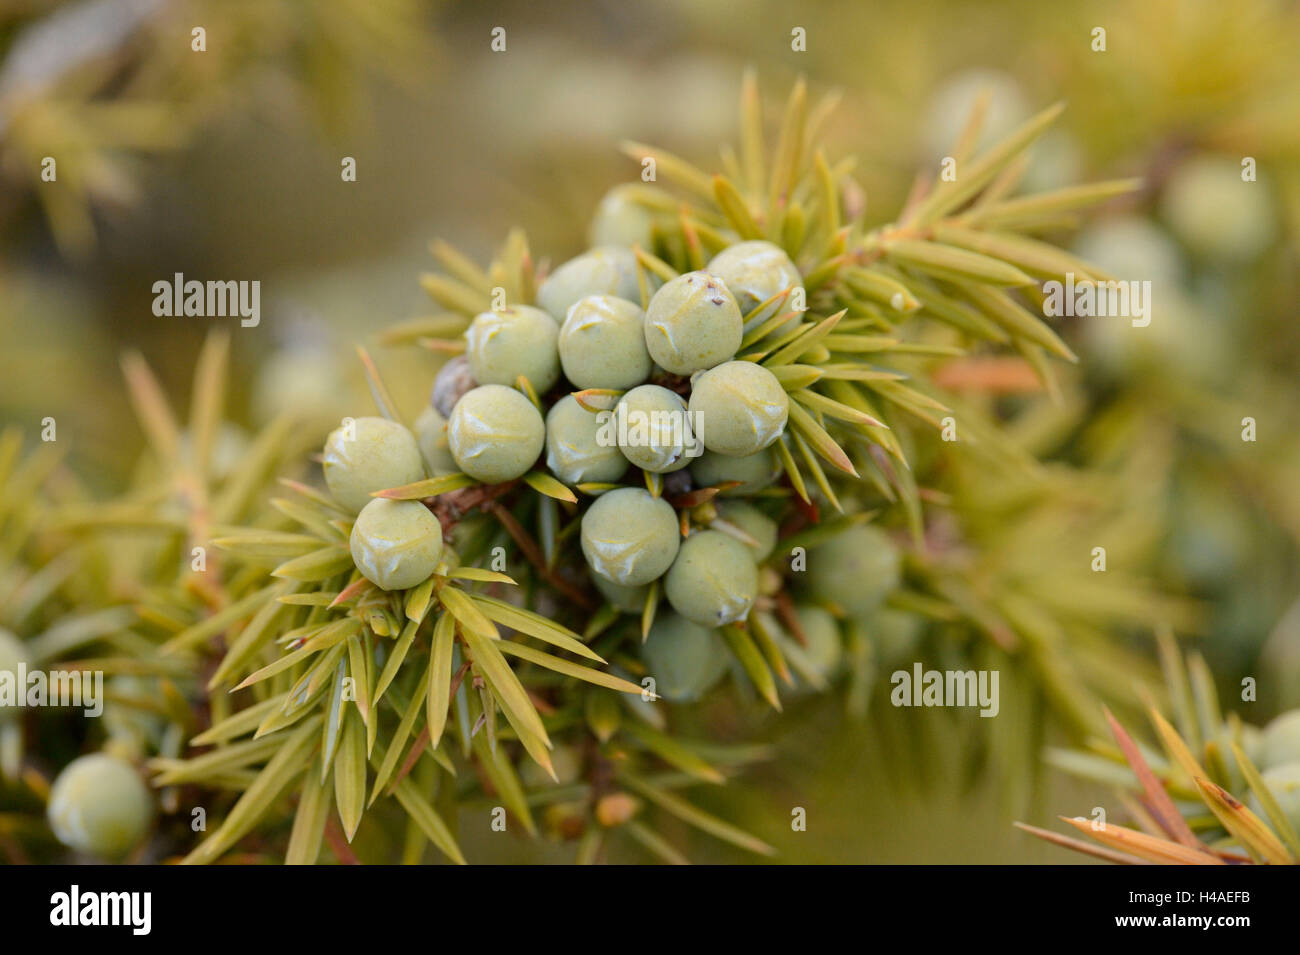 Common juniper, Juniperus communis, plugs, detail, Stock Photo